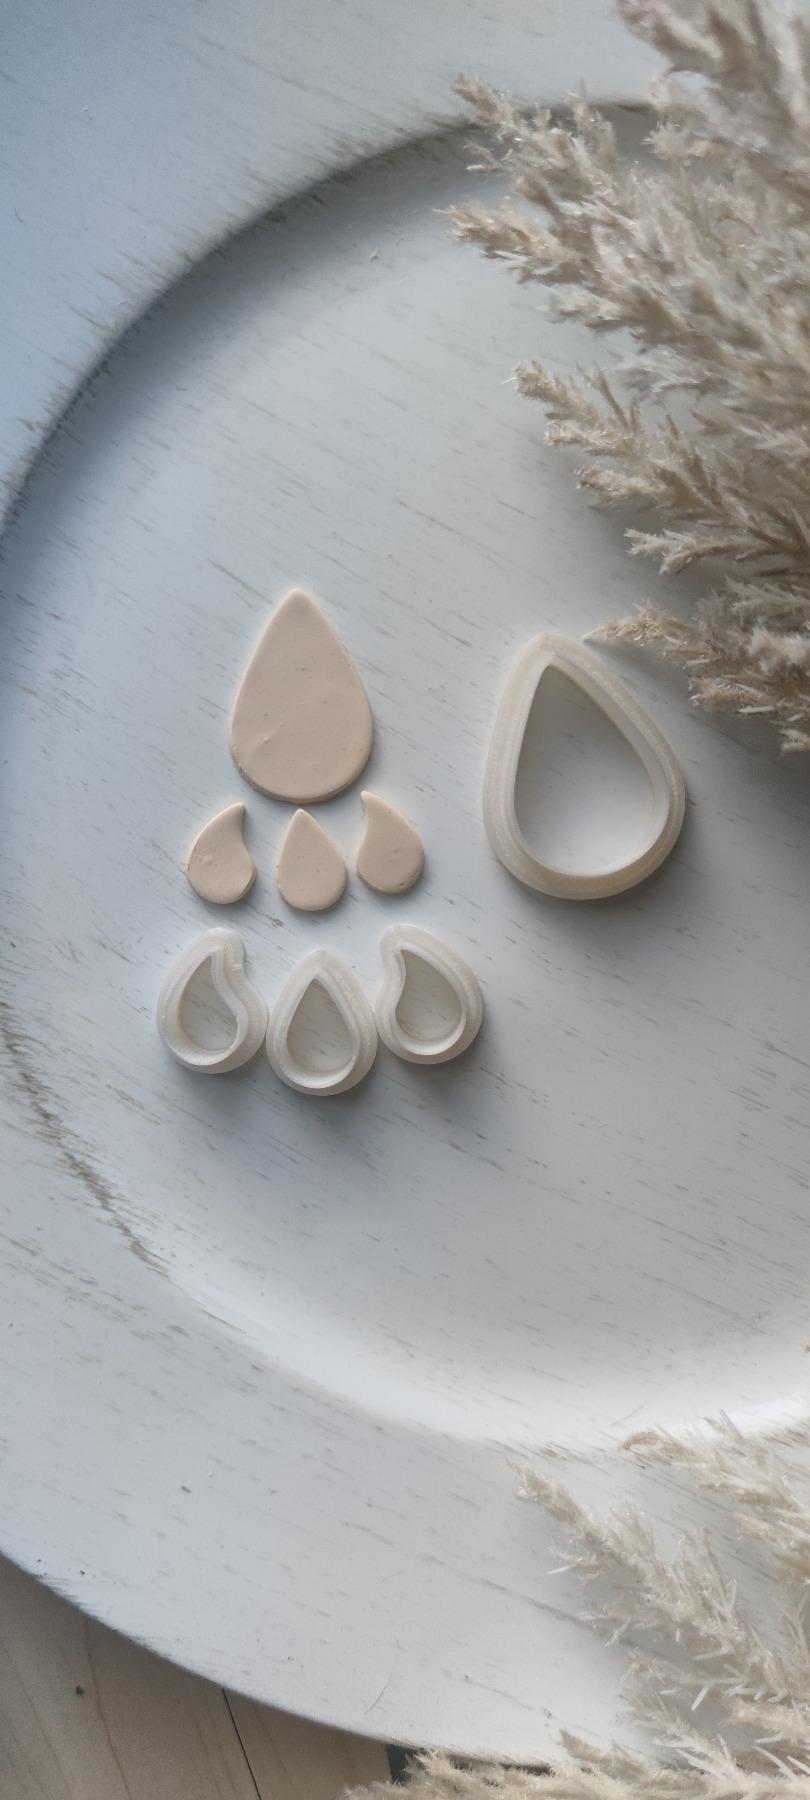 Product Polymer Clay Cutter Set | Ausstechform | Präger | FIMO Cutter | Stempel | Polymer Clay Zubehör | DIY-Werkzeug | handmade Schmuck | Tropfen Set | Online Shop | Klunkerkiste image